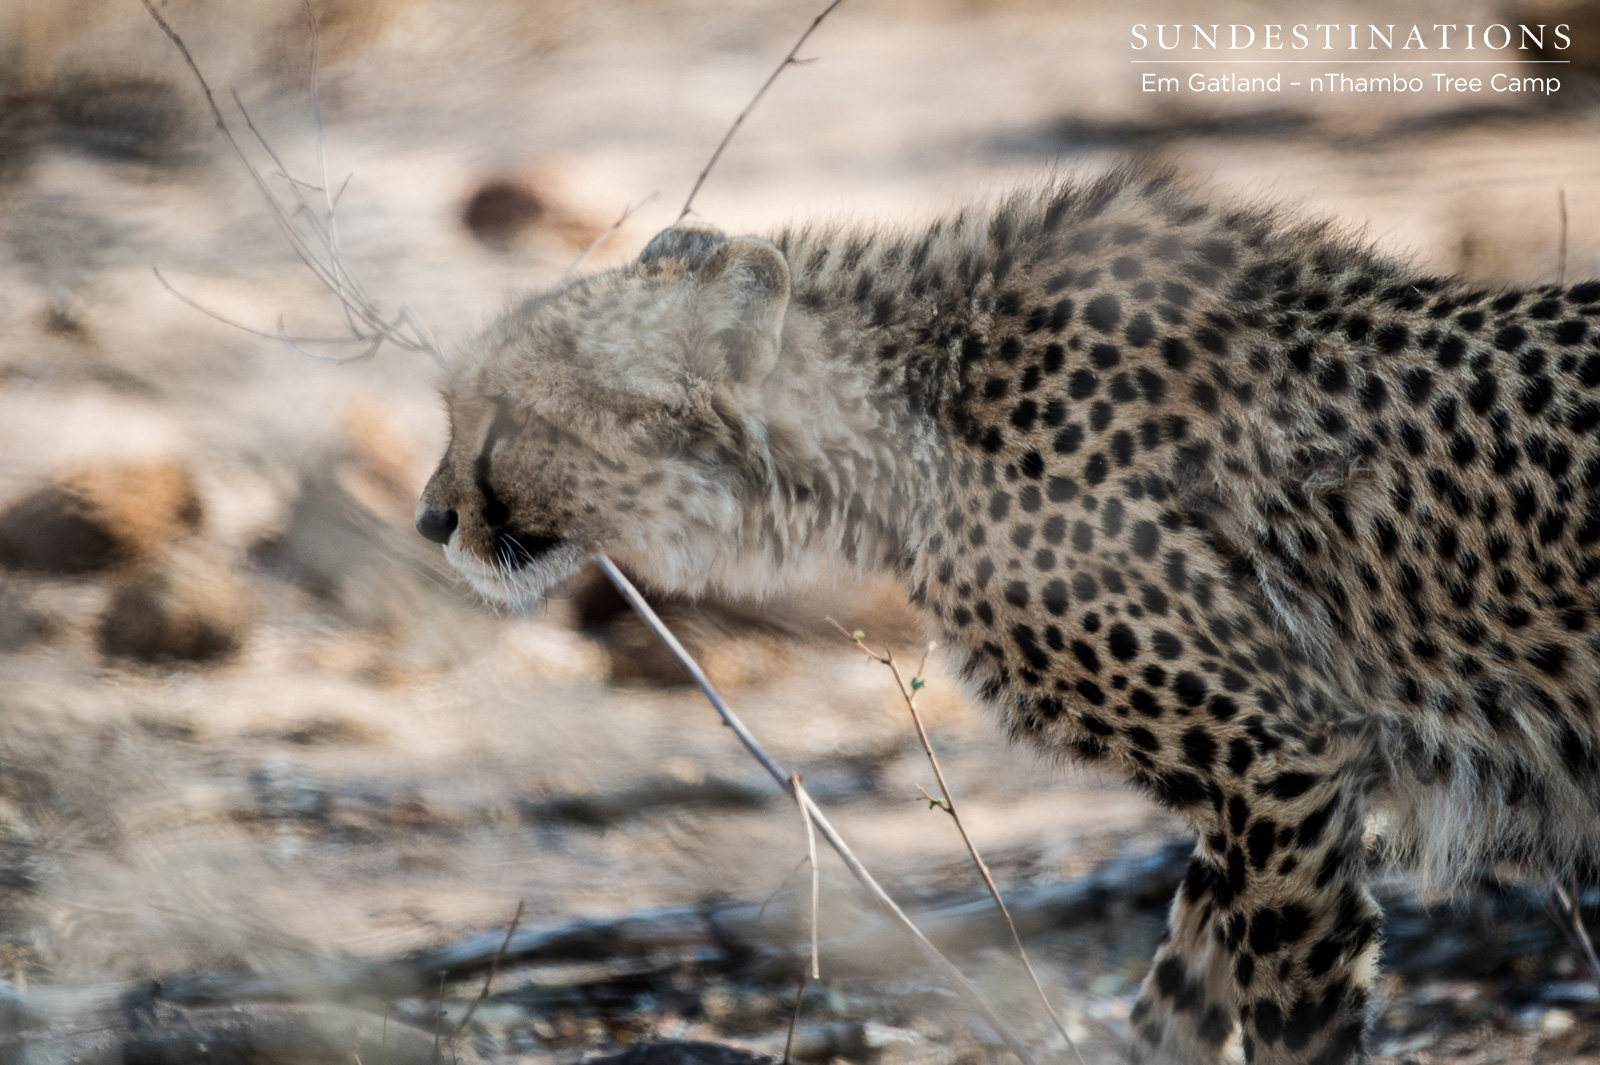 Cheetah at nThambo Tree Camp